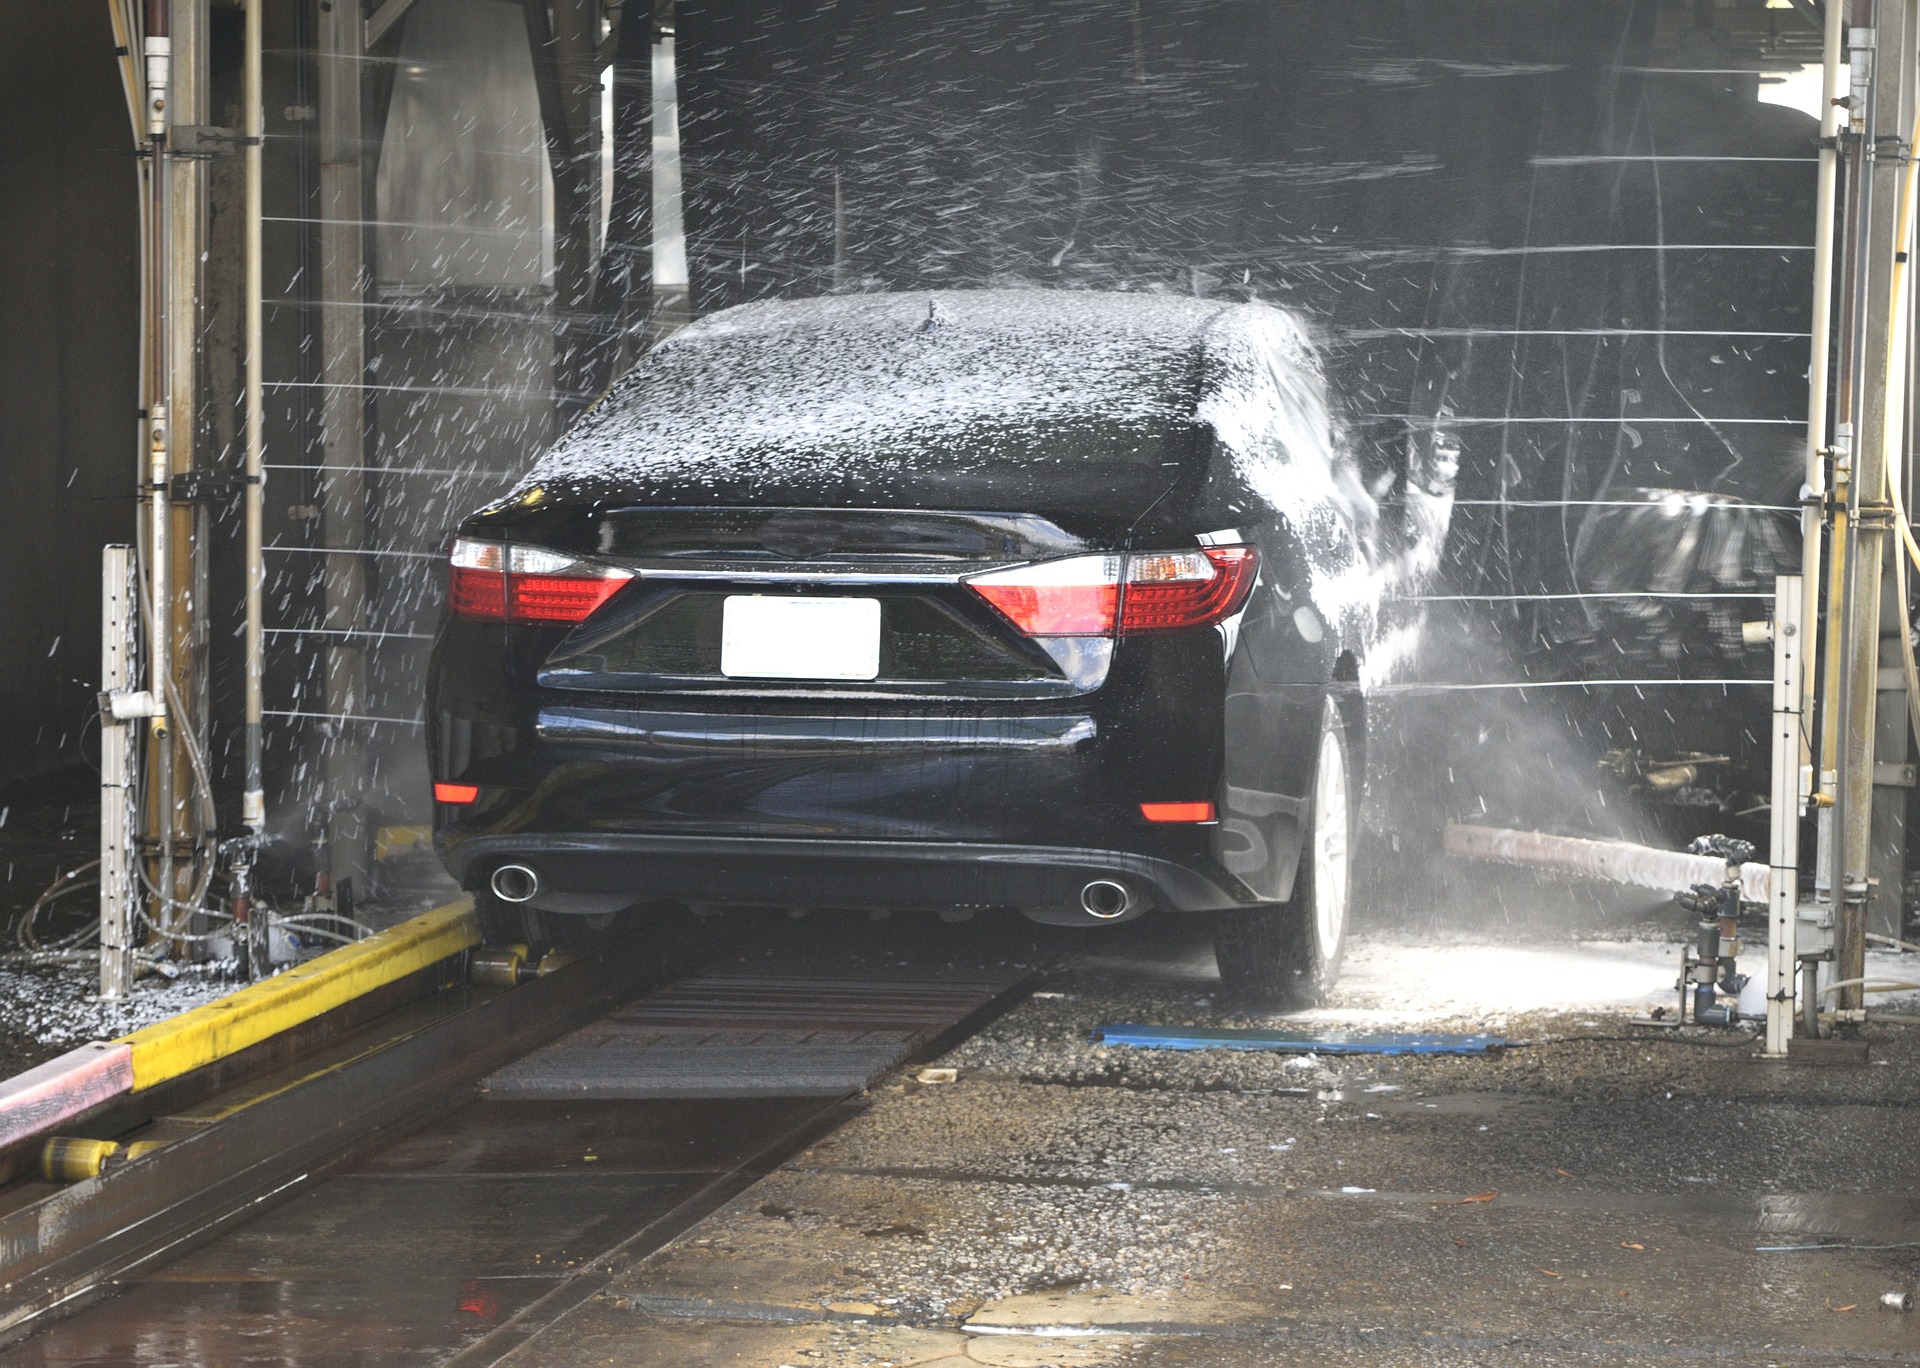 บทความเกี่ยวกับเสื้อกันฝน: การดูแลรักษารถยนต์ ด้วยการเลือกใช้  น้ำยาล้างรถ 